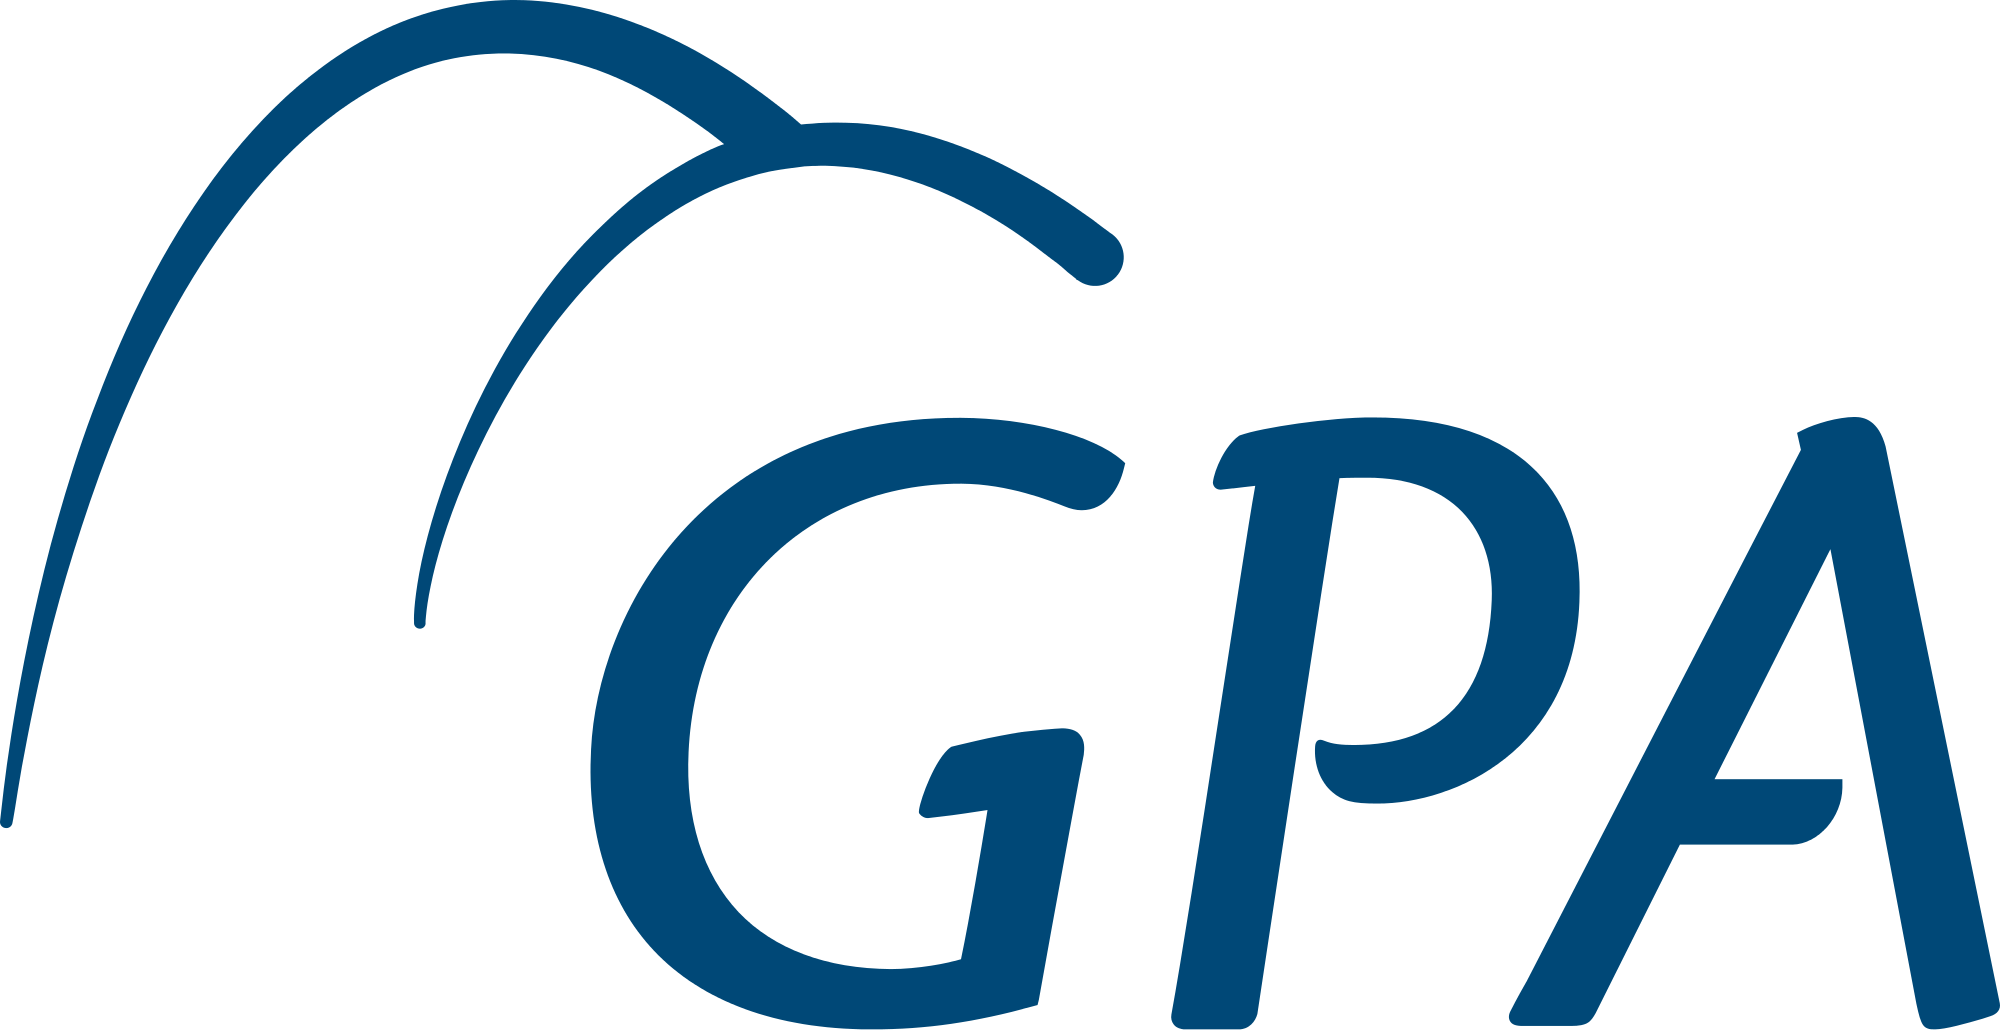 File:GPA logo 2013.png